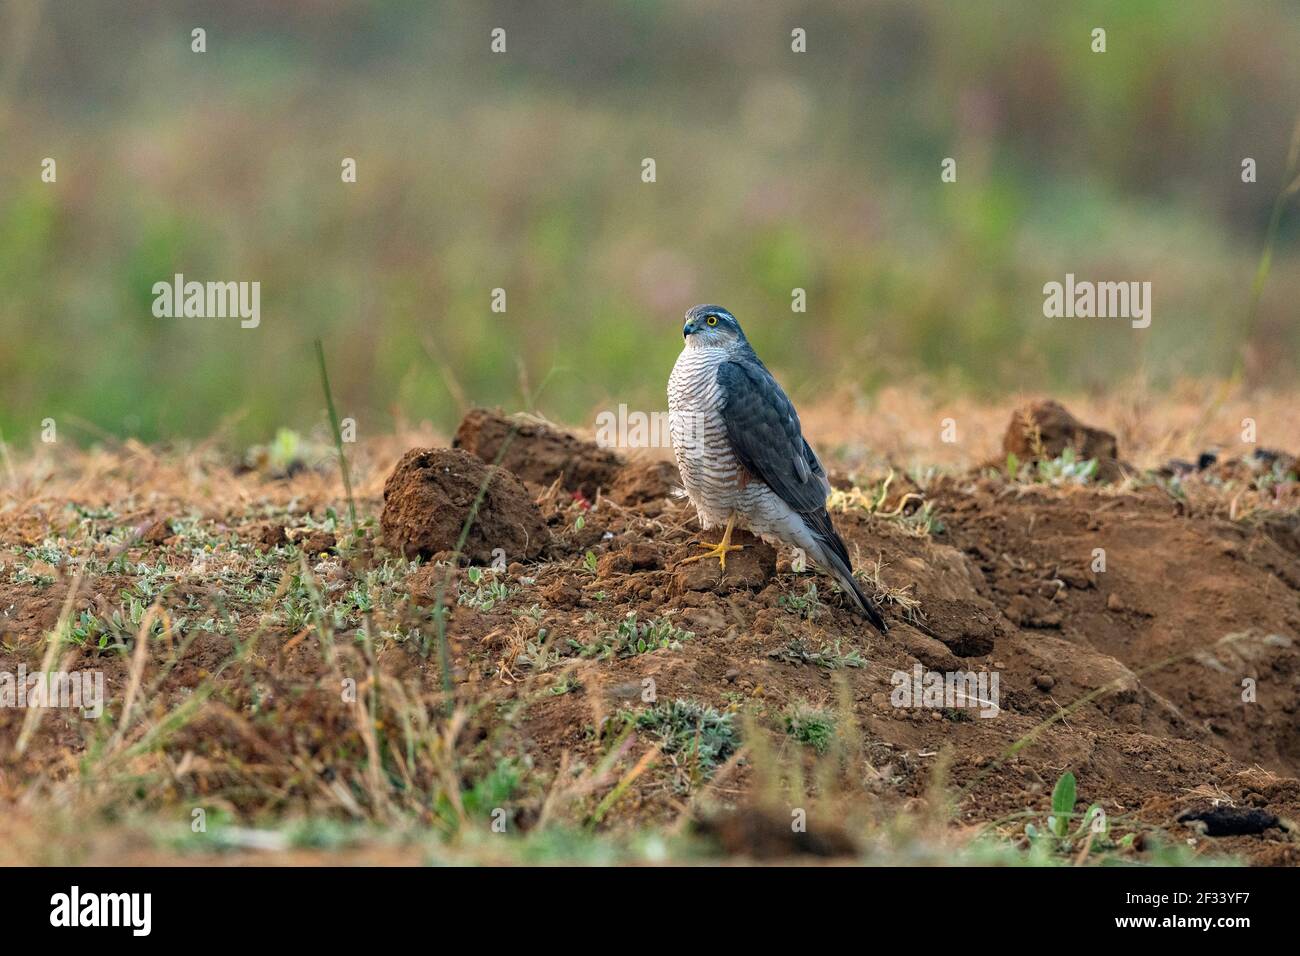 Sparrowhawk eurasien, Accipiter nisus, femelle, Pune. Petit faucon à longue queue avec ailes larges et arrondies Banque D'Images